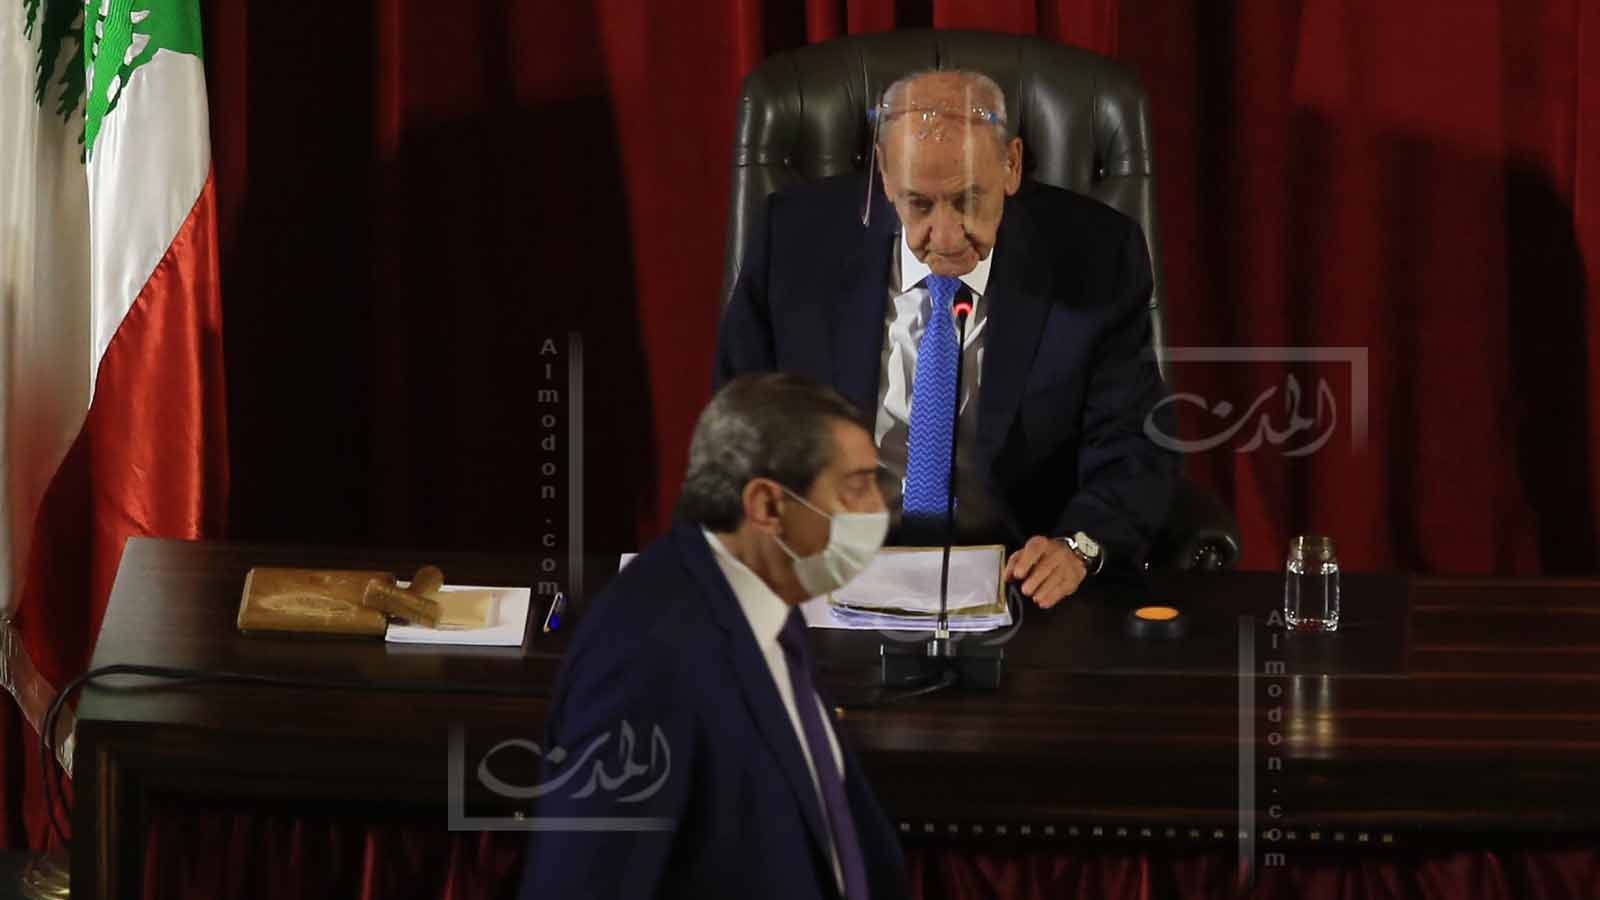 مجلس النواب ينتظم ولا يشرّع.. وجعجع "لن يتجرع السمّ"